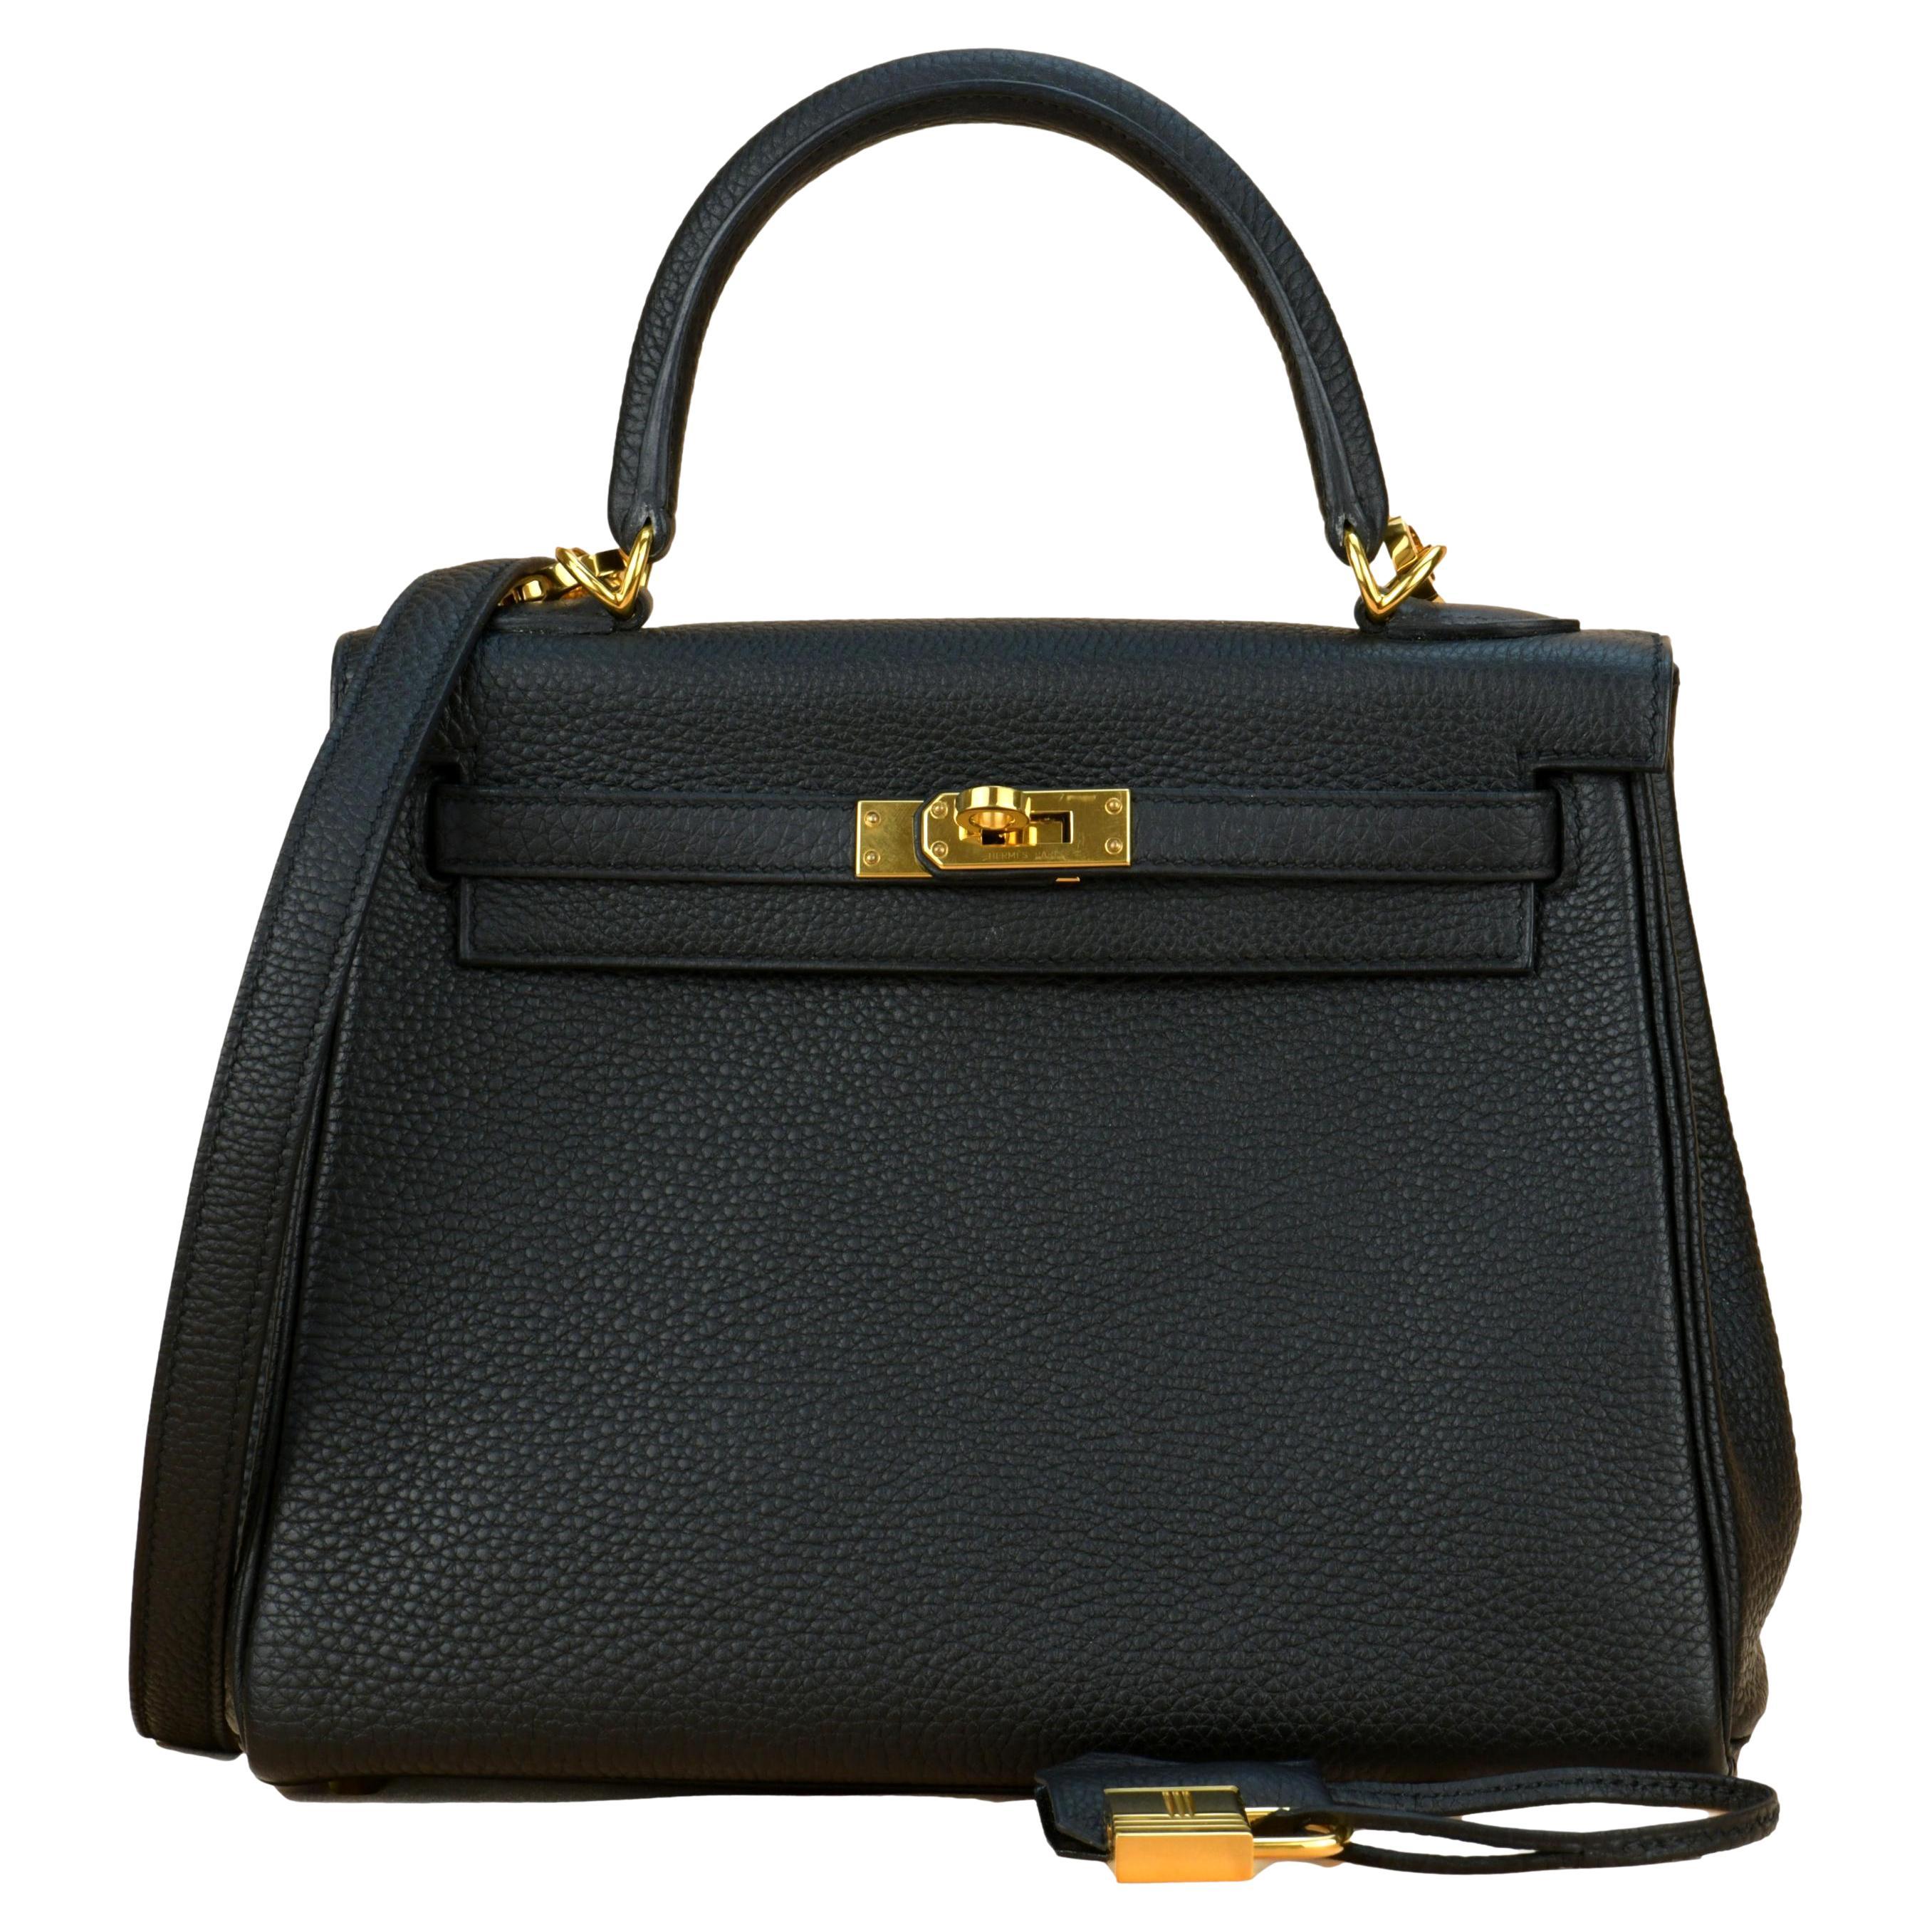 Hermes Black Togo Leather Gold Hardware Kelly 25 Bag